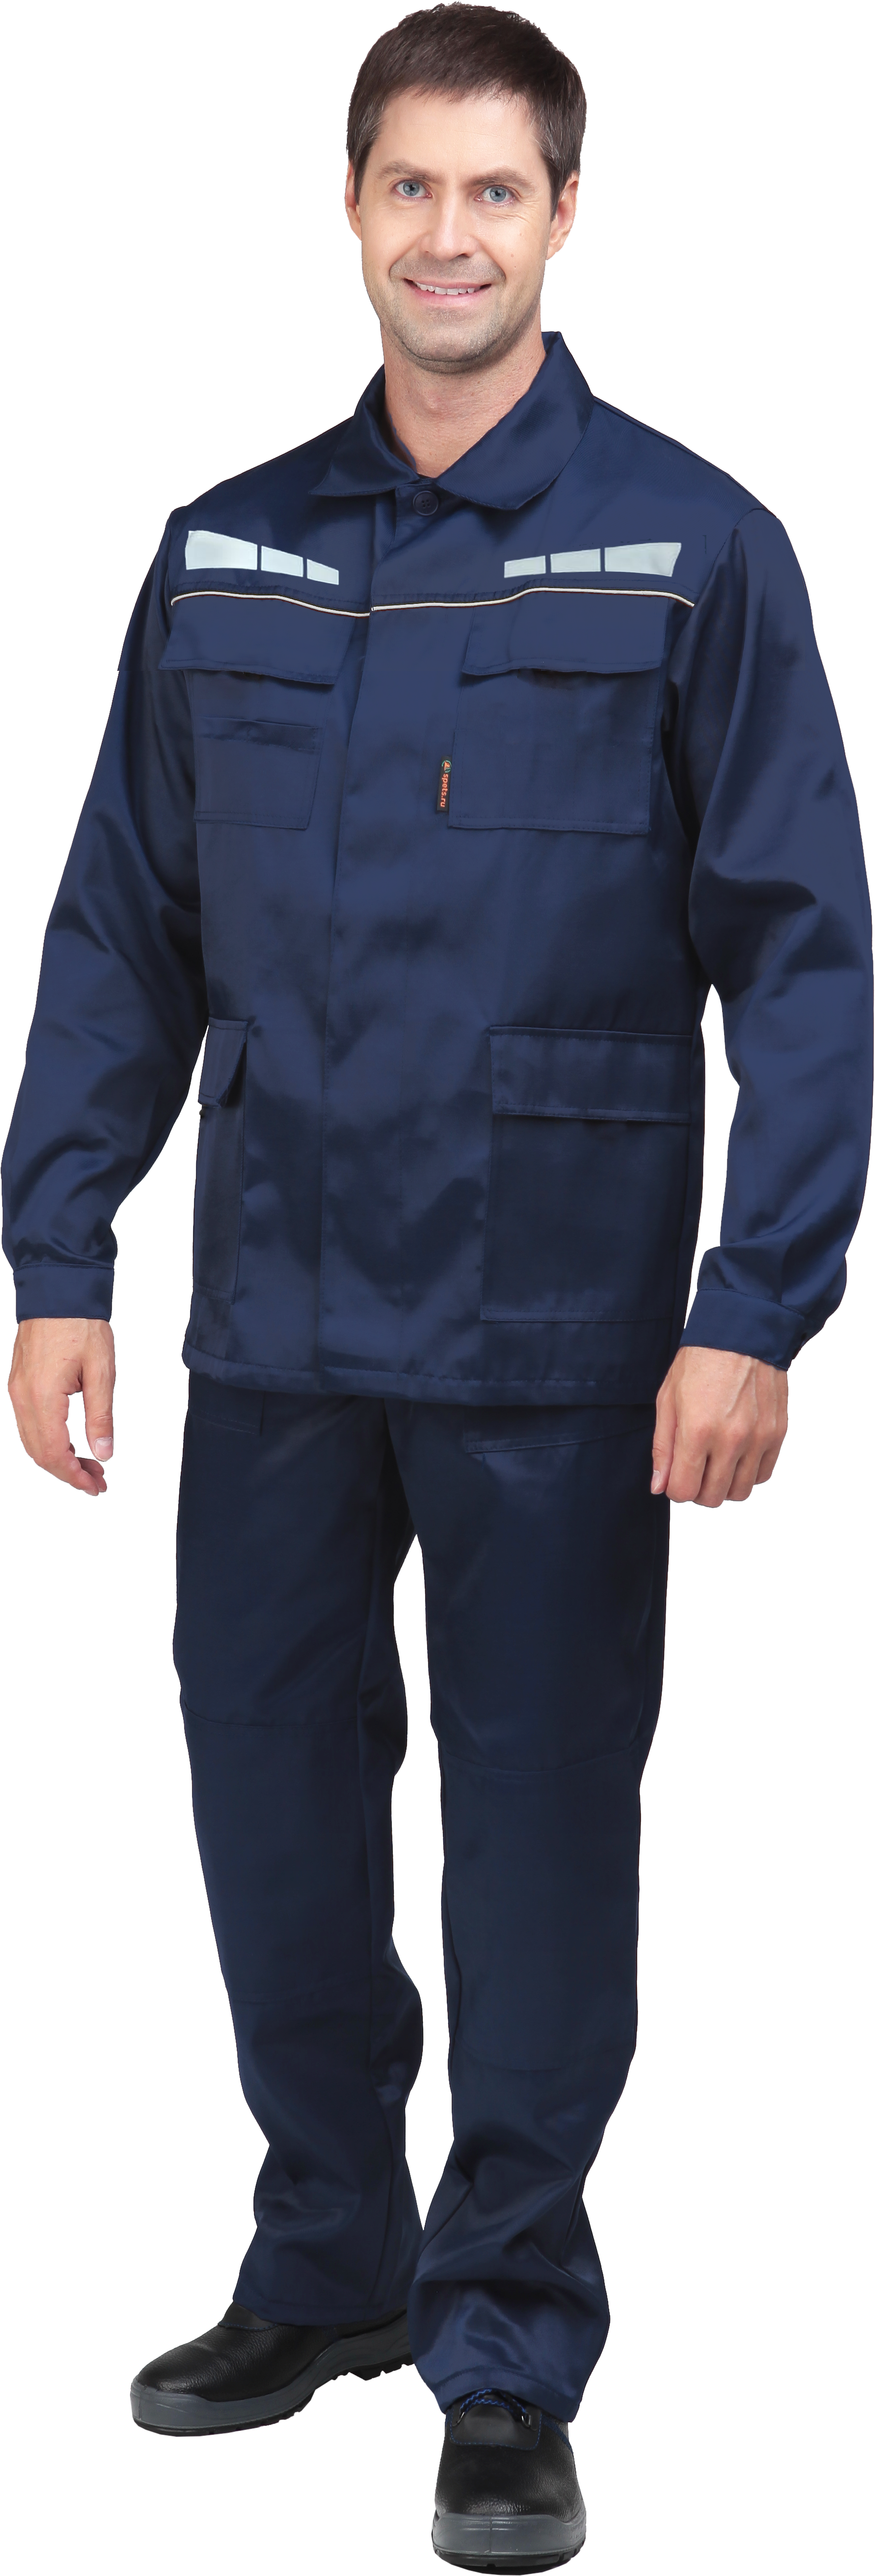 Костюм мужской ОПЕРАТОР от механических воздействий и ОПЗ (куртка, брюки), цвет темно-синий (104-108, 182-188)